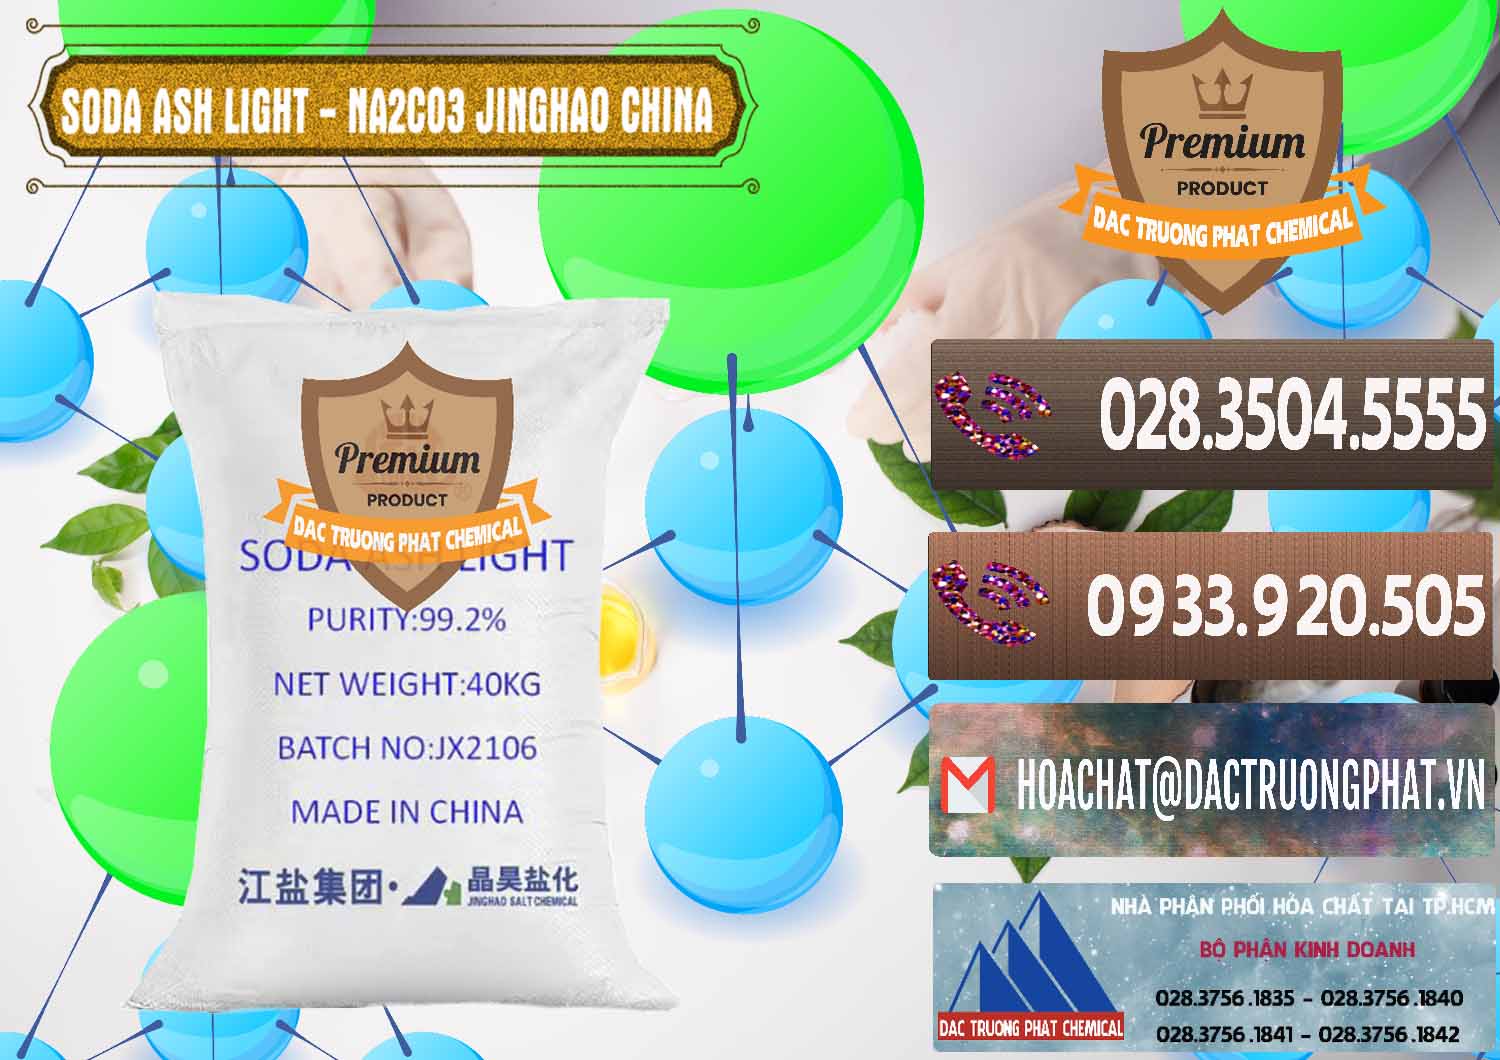 Chuyên nhập khẩu - bán Soda Ash Light - NA2CO3 Jinghao Trung Quốc China - 0339 - Cty chuyên cung cấp và bán hóa chất tại TP.HCM - hoachatviet.net